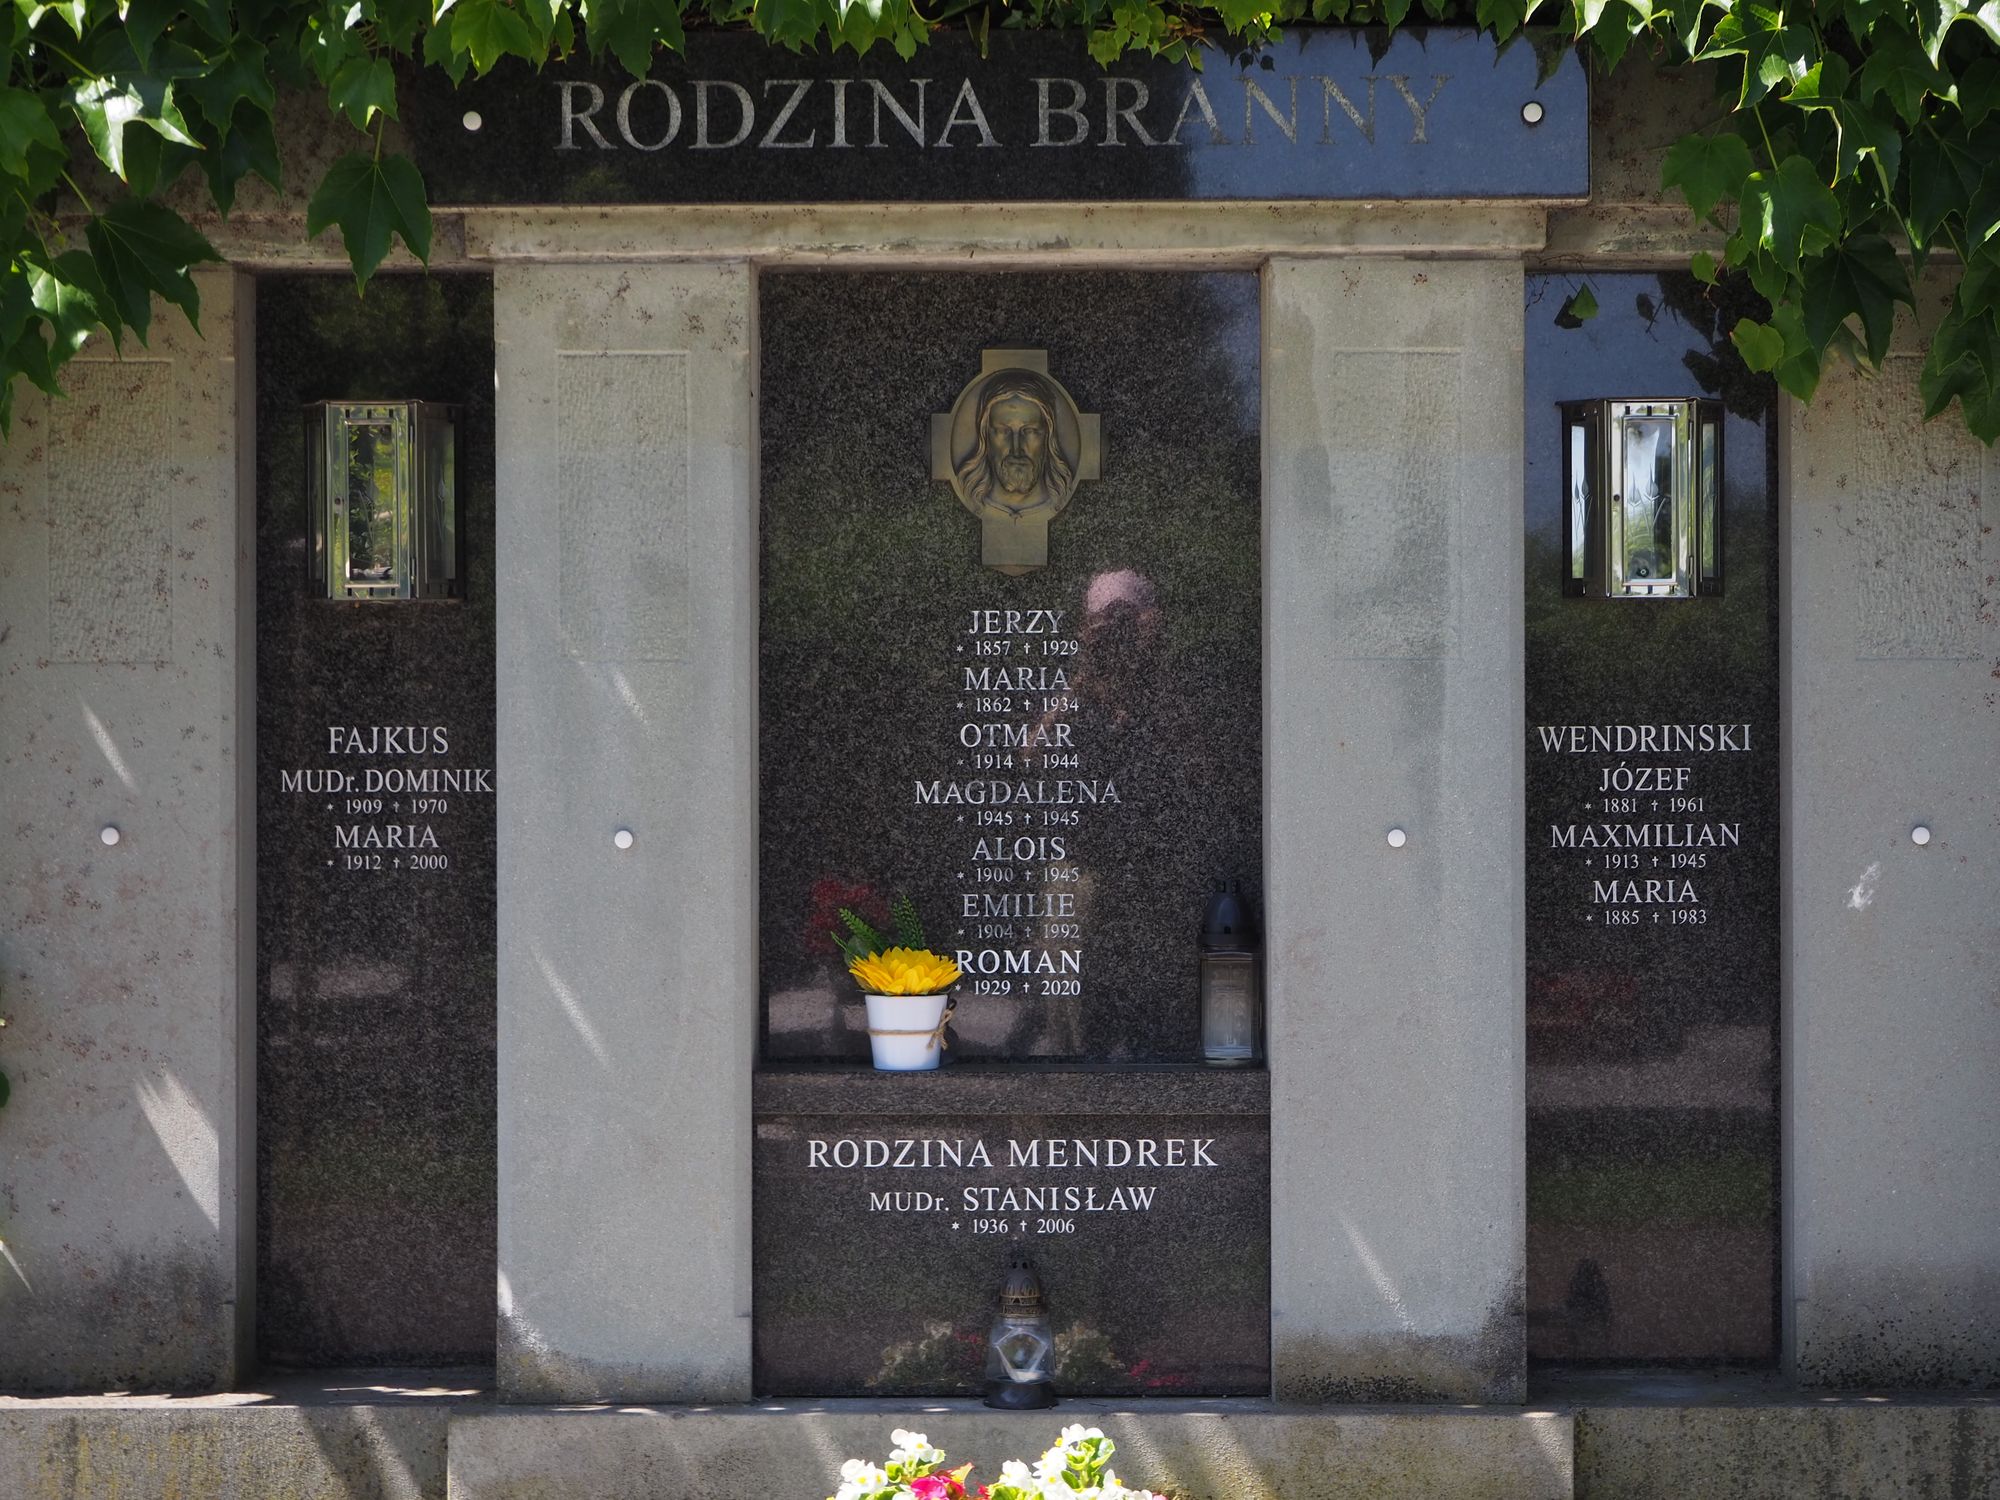 Tombstone of the Branny family, fragment, cemetery in Český Těšín, as of 2022.